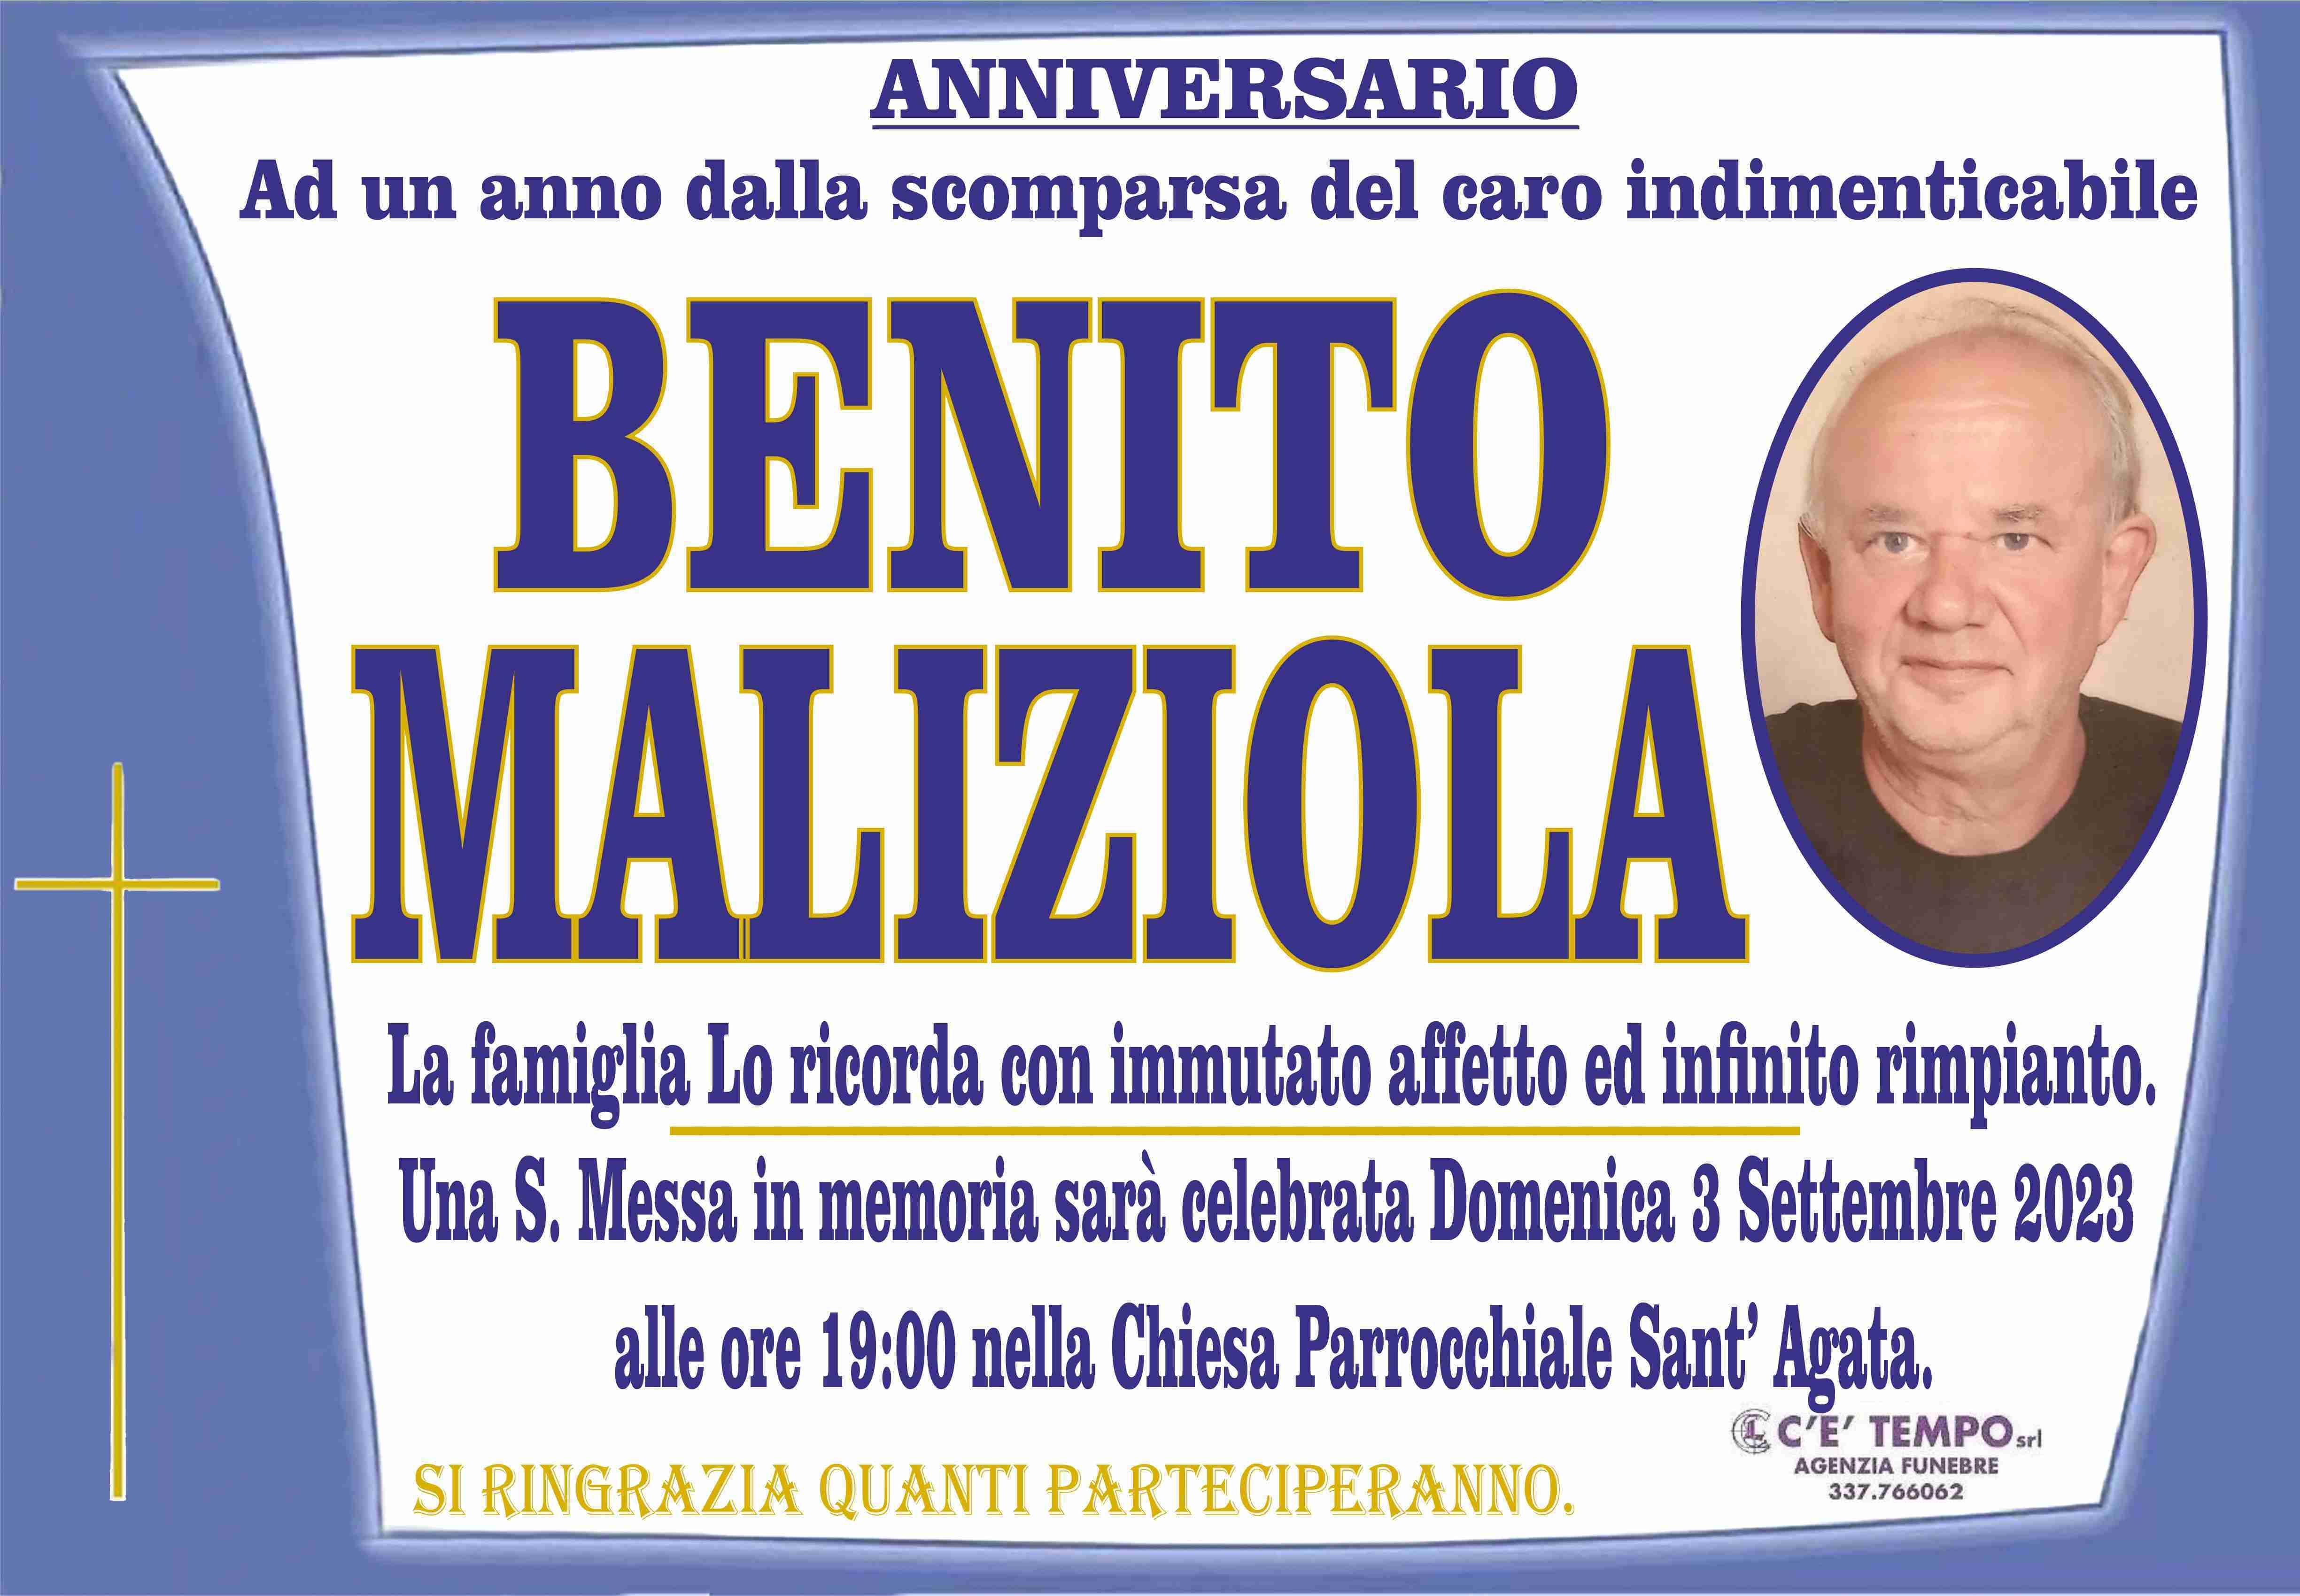 Benito Maliziola